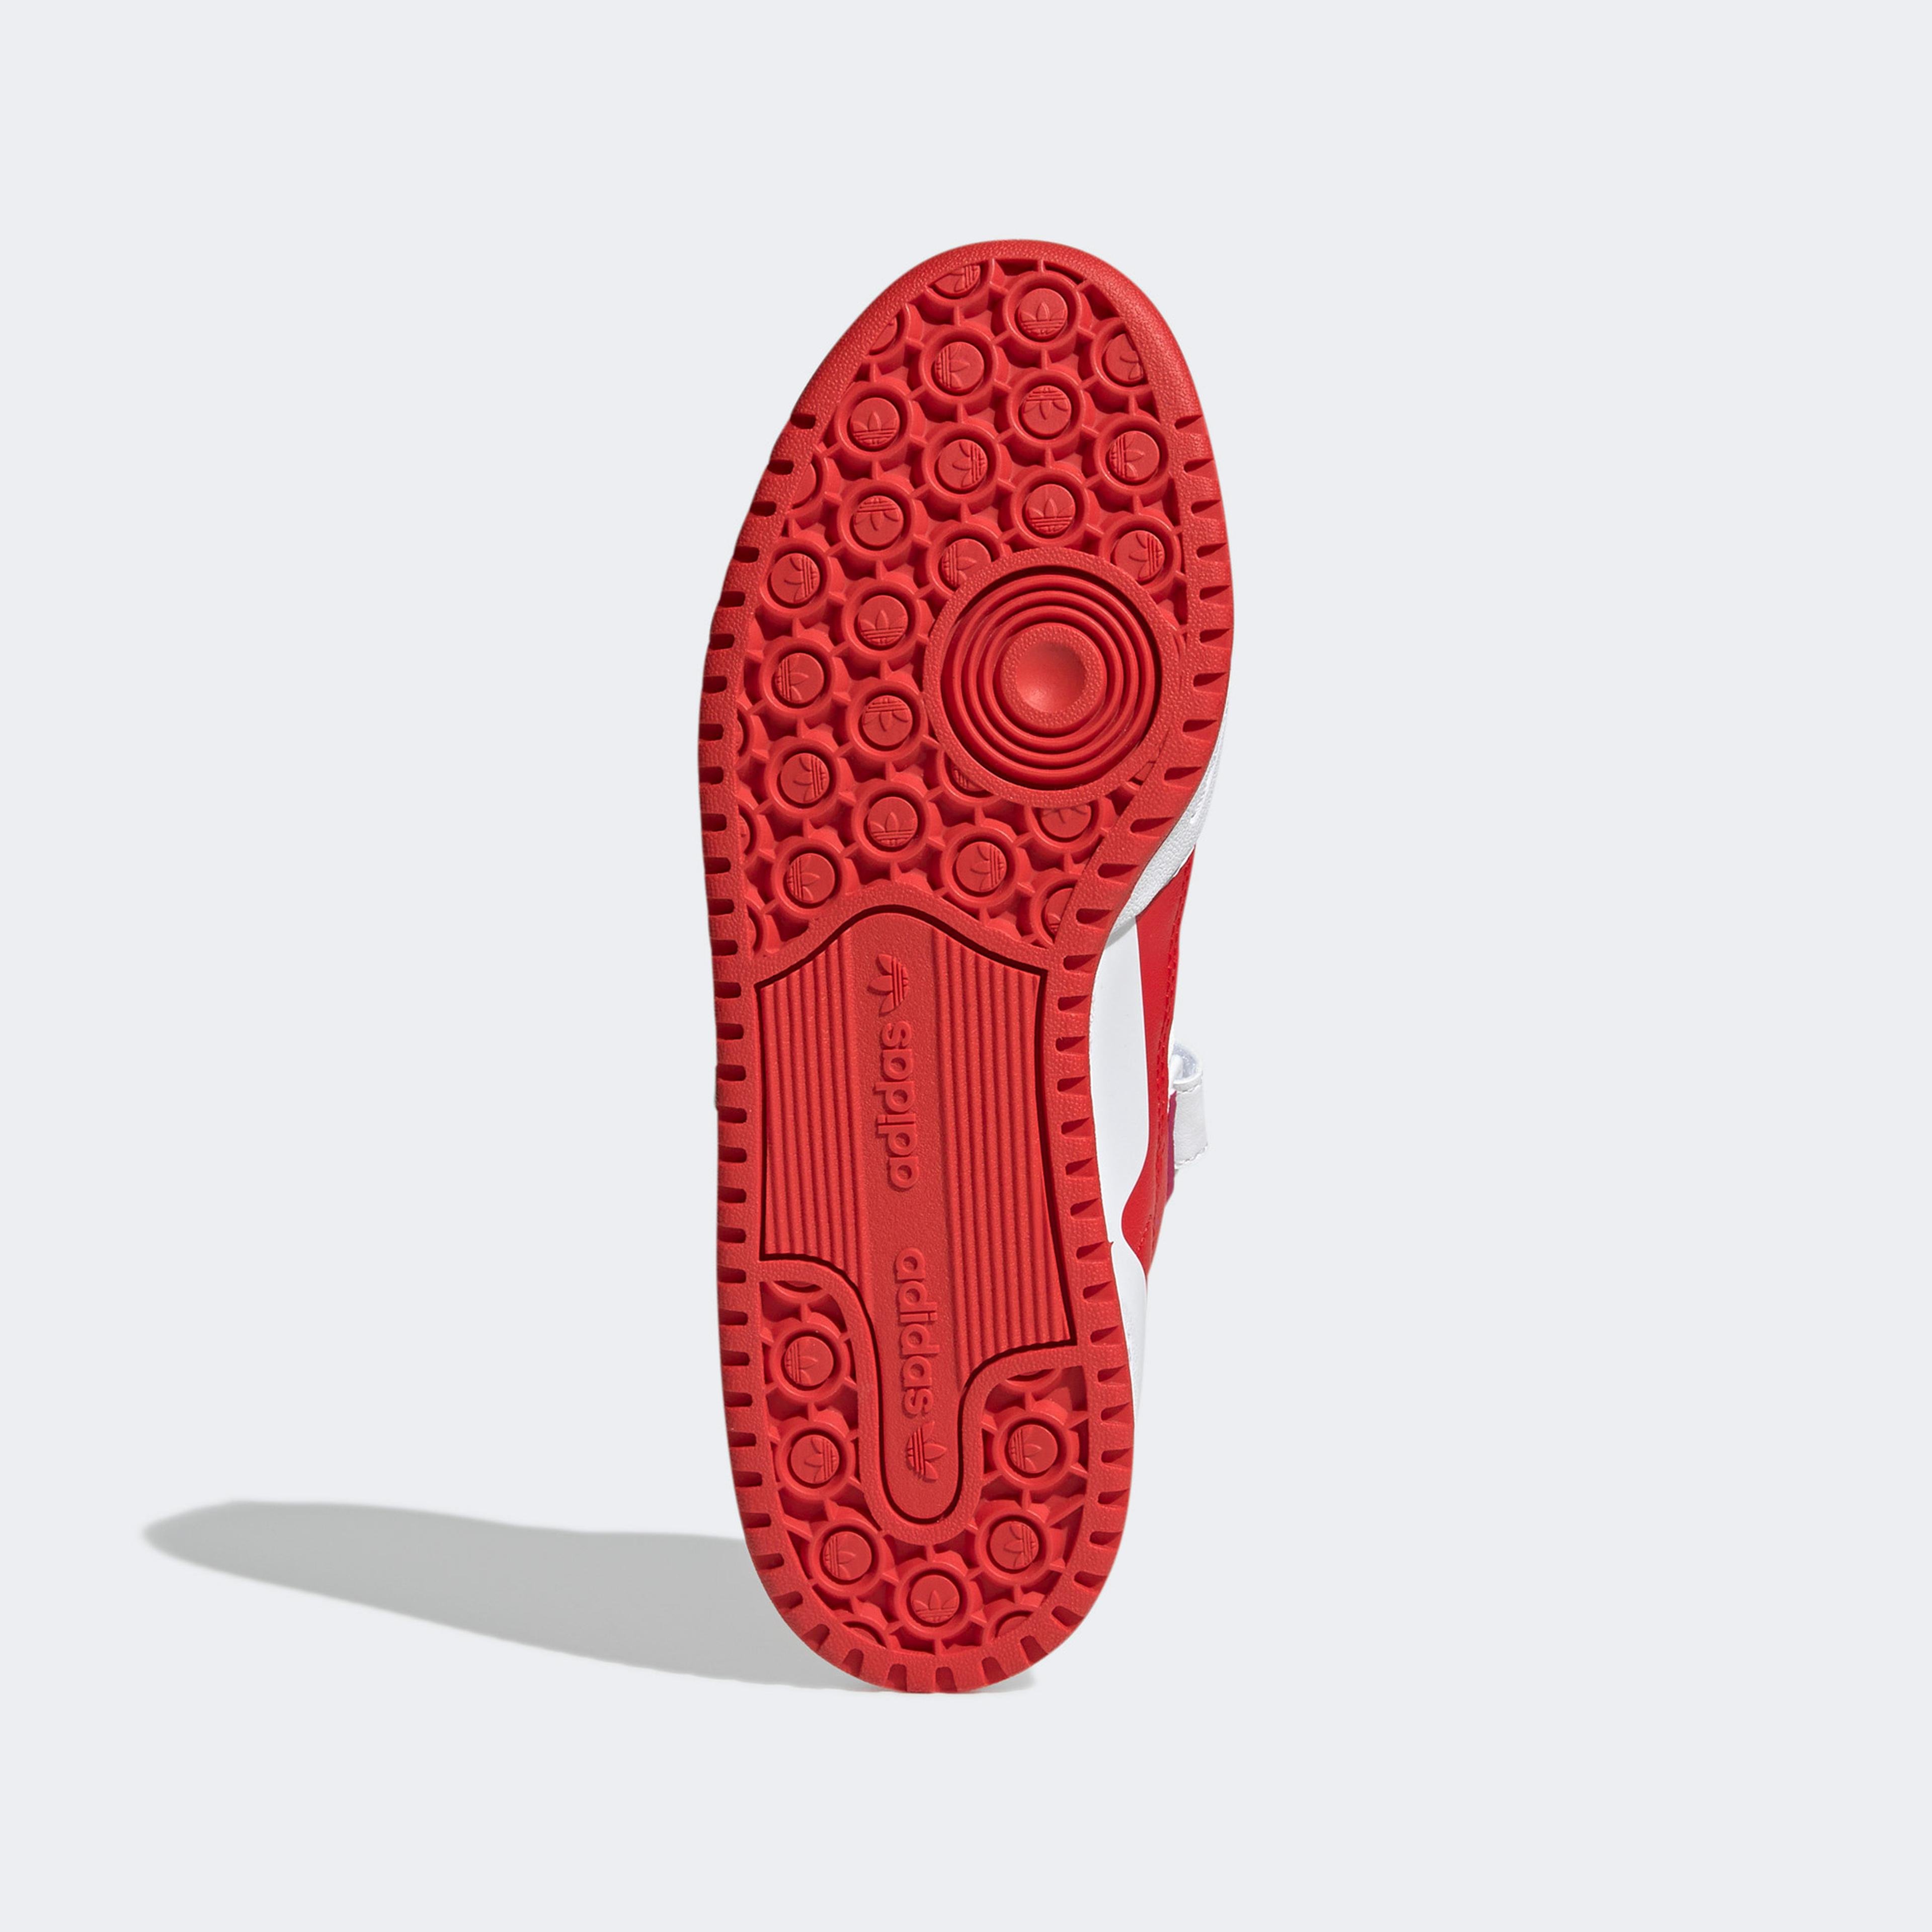 adidas Forum Low Kadın Kırmızı Spor Ayakkabı